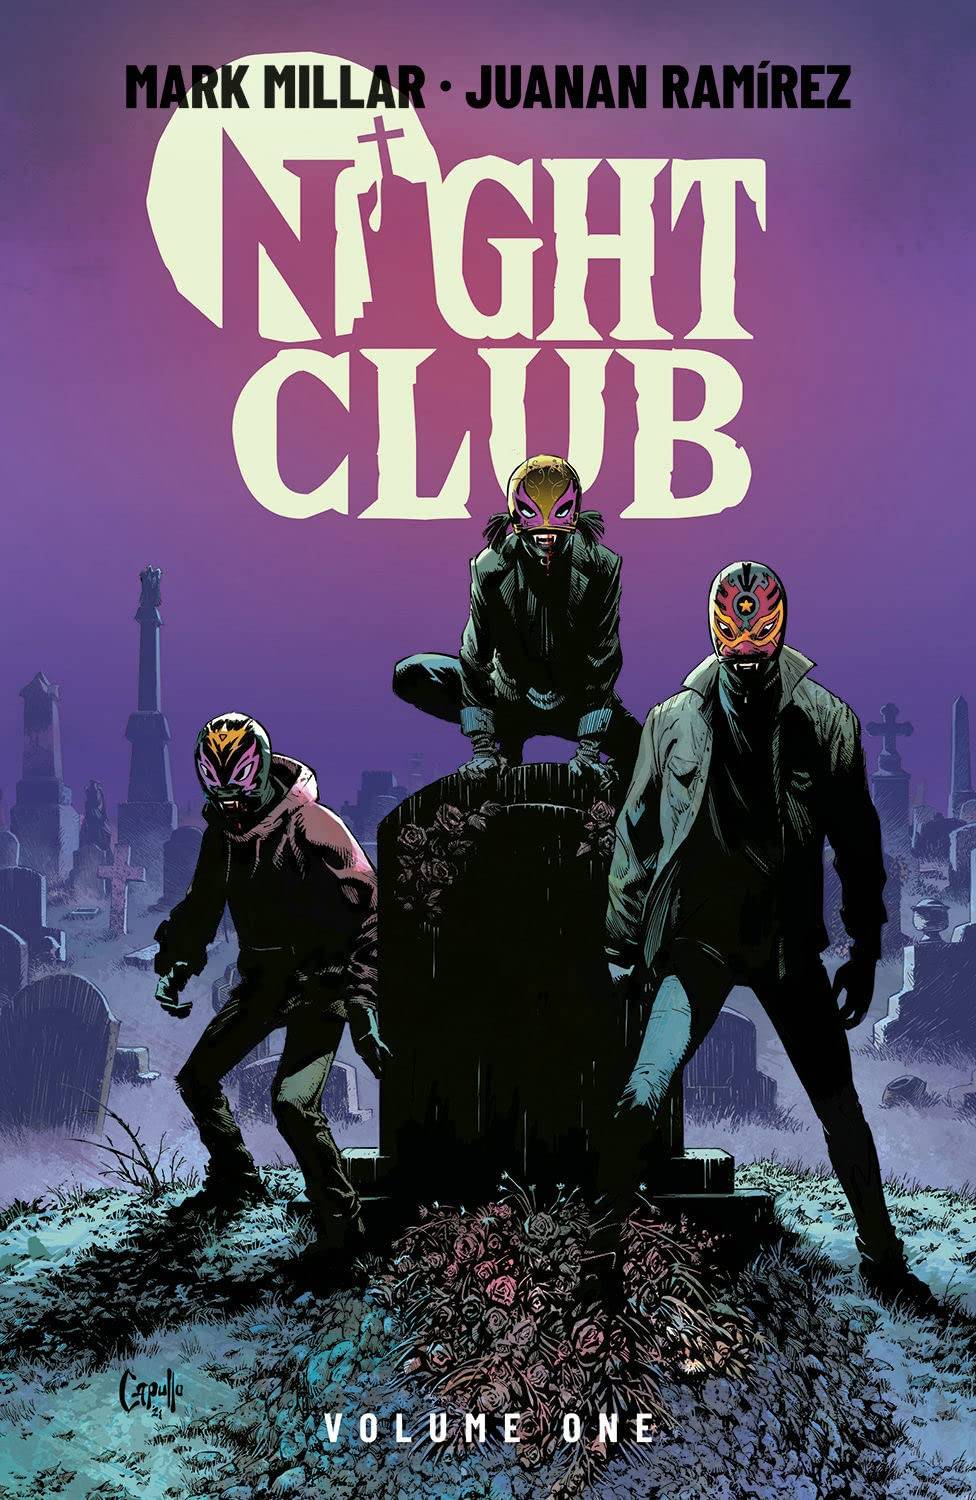 Night Club: vampiros adolescentes con ganas de fiesta